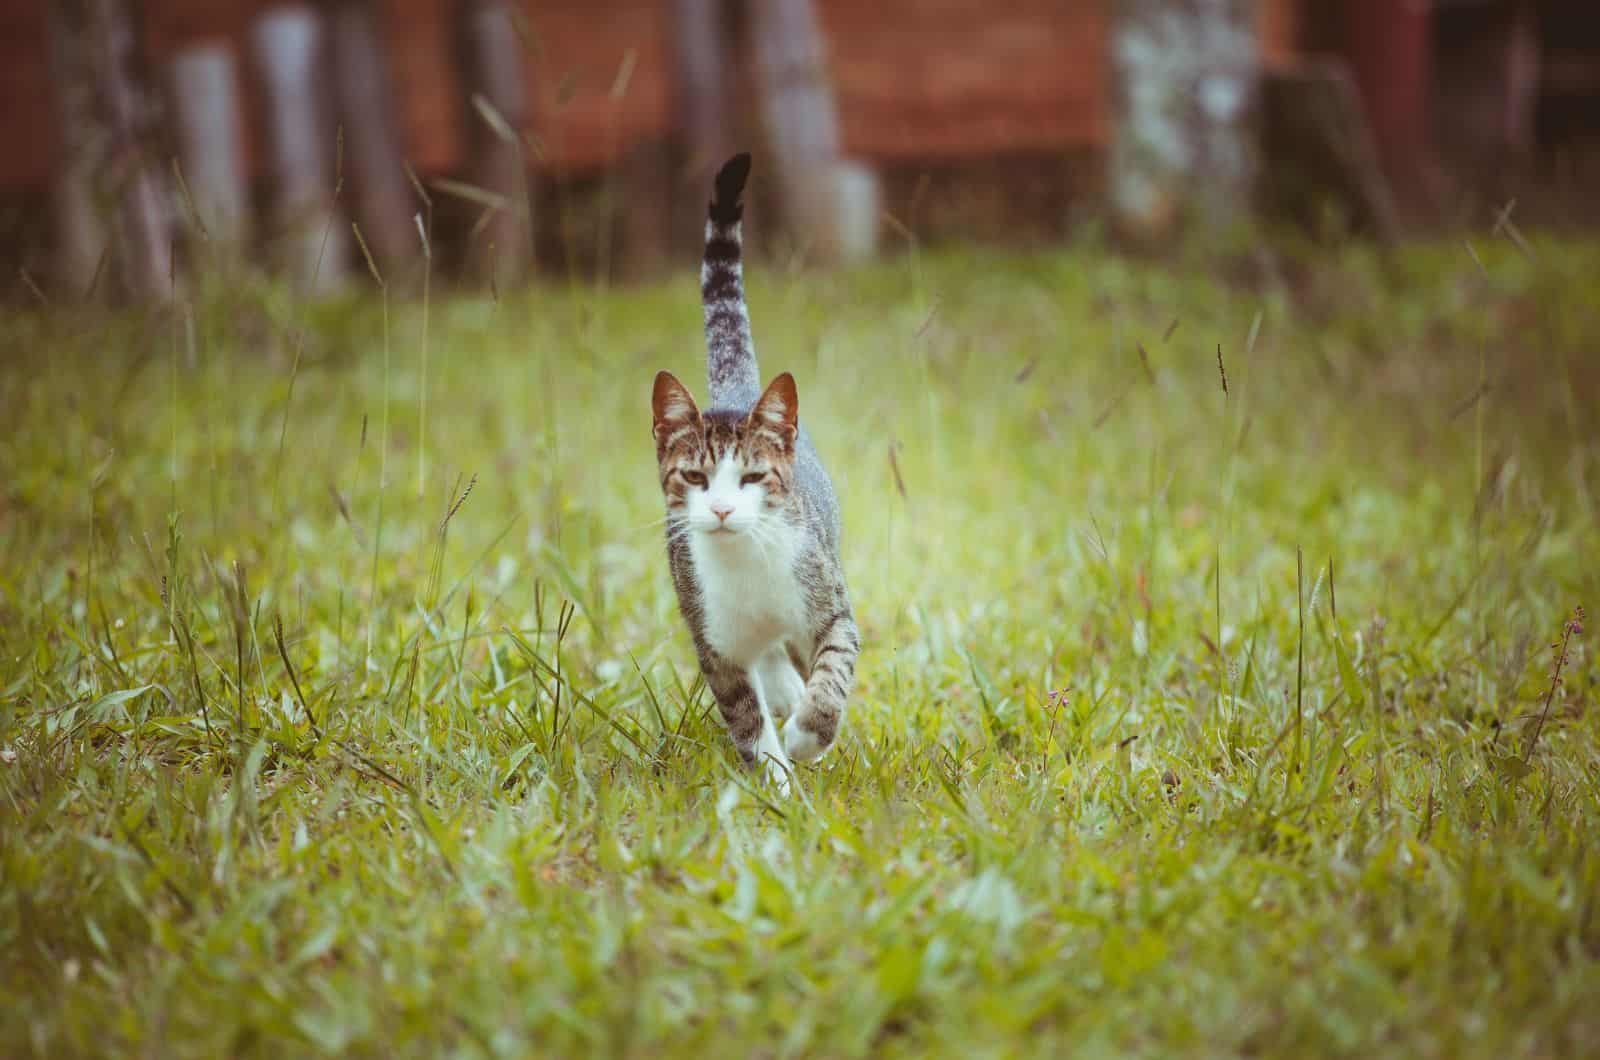 cat walking on grass outside